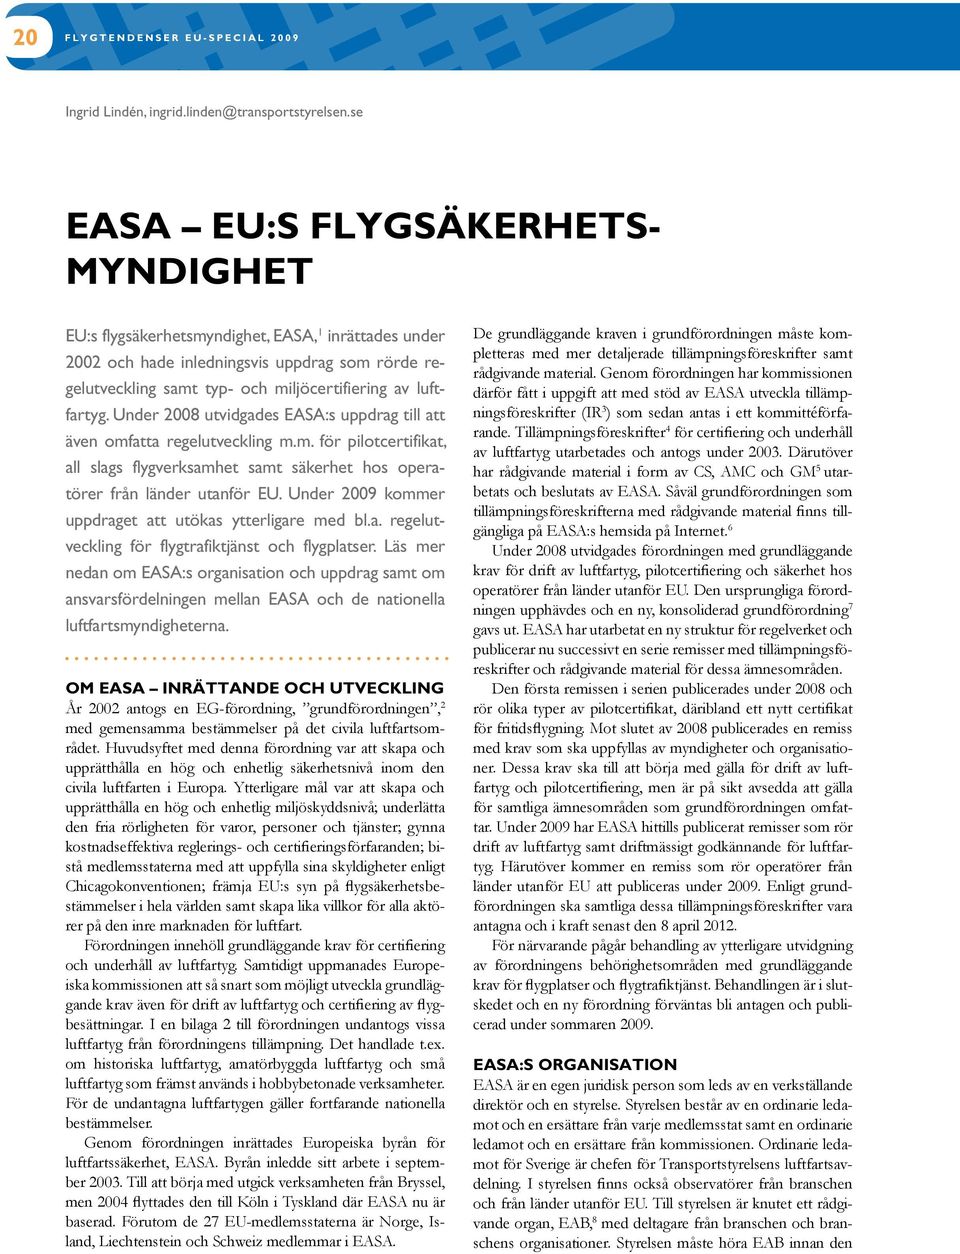 Under 2008 utvidgades EASA:s uppdrag till att även omfatta regelutveckling m.m. för pilotcertifikat, all slags flygverksamhet samt säkerhet hos operatörer från länder utanför EU.